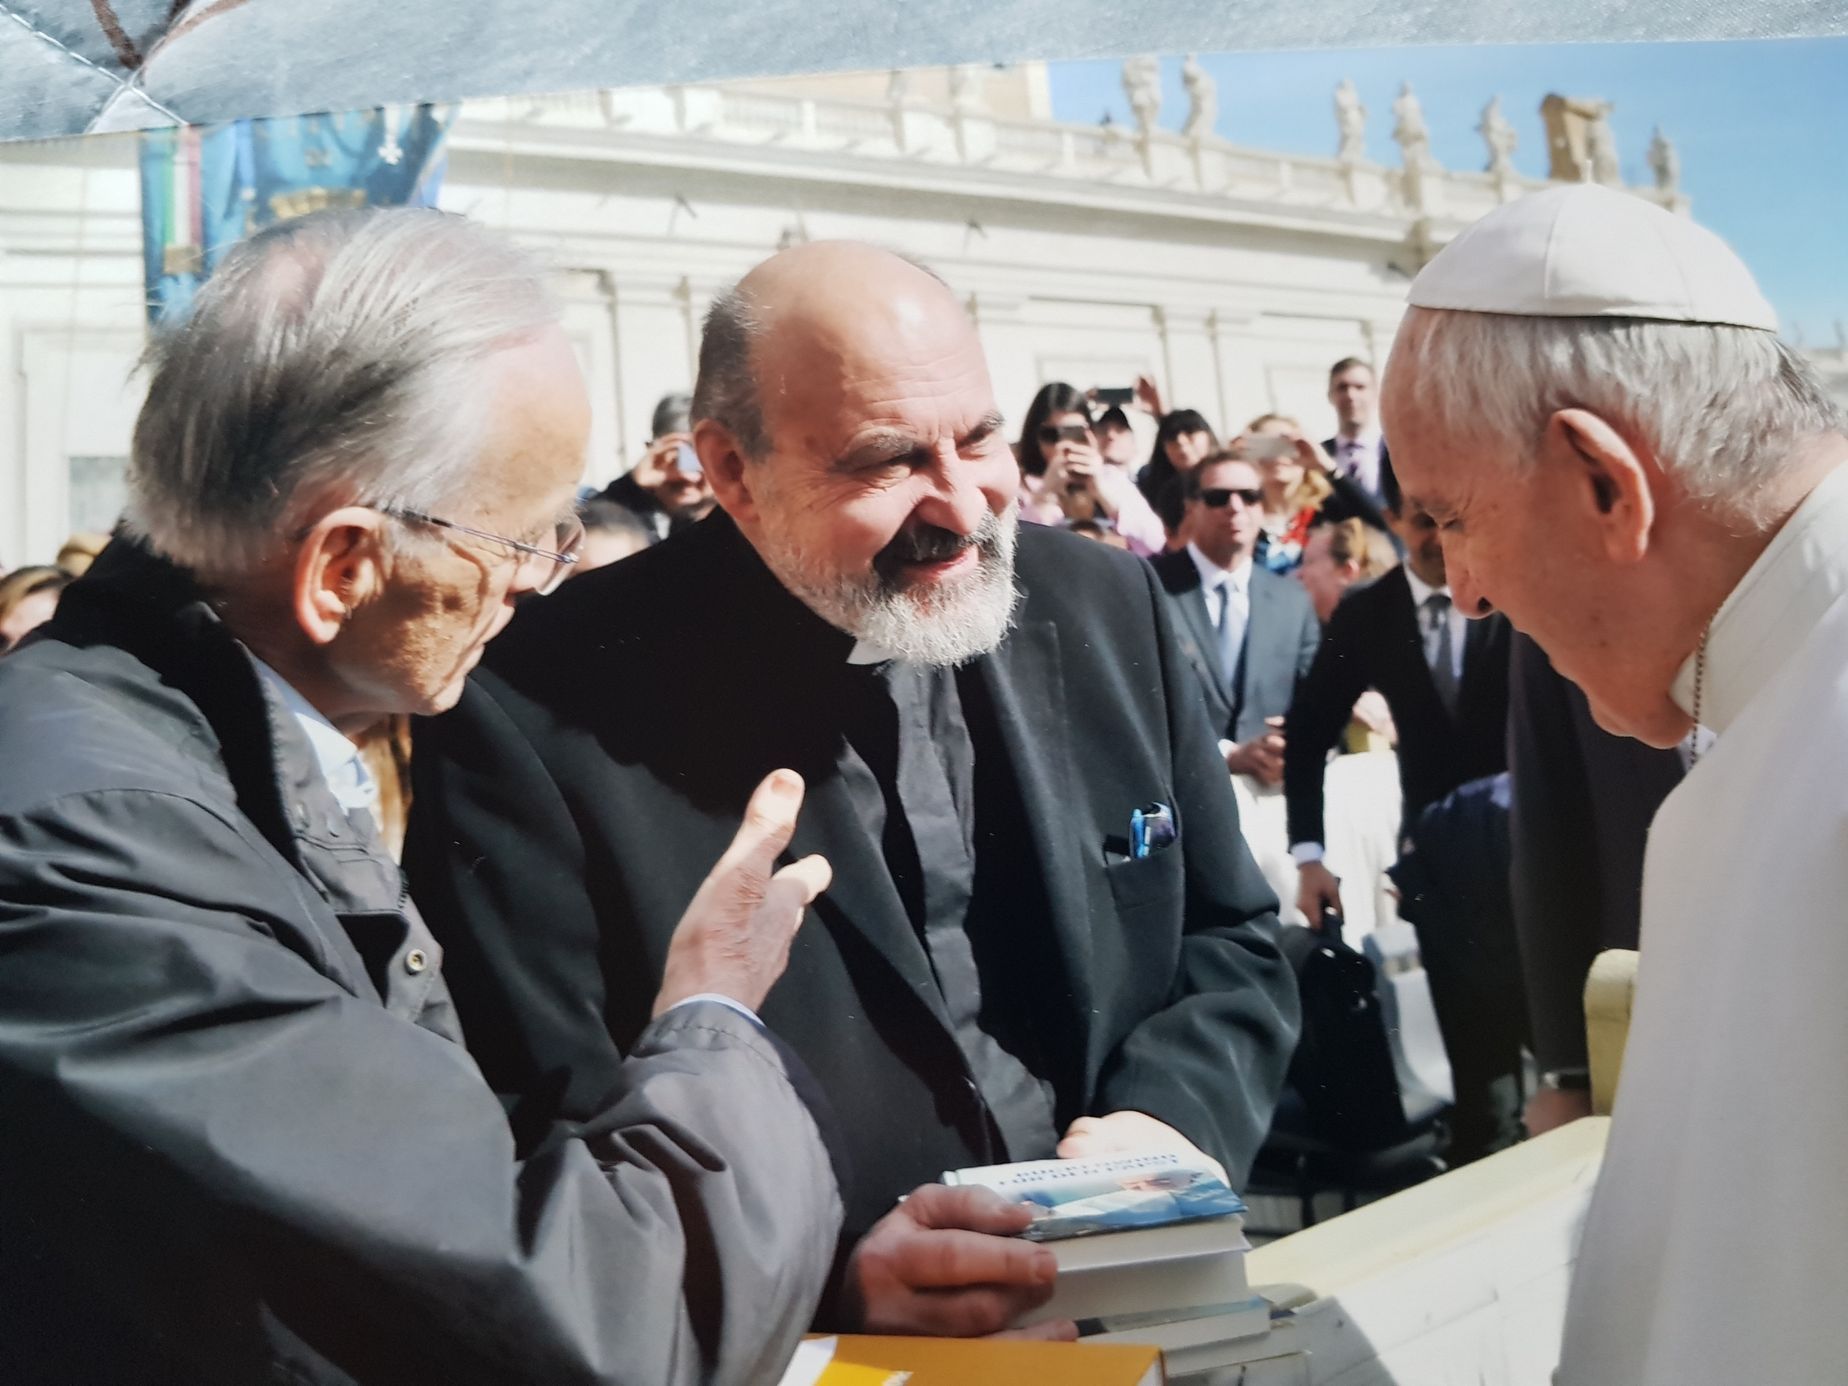 Setkání Tomáše Halíka s papežem Františkem